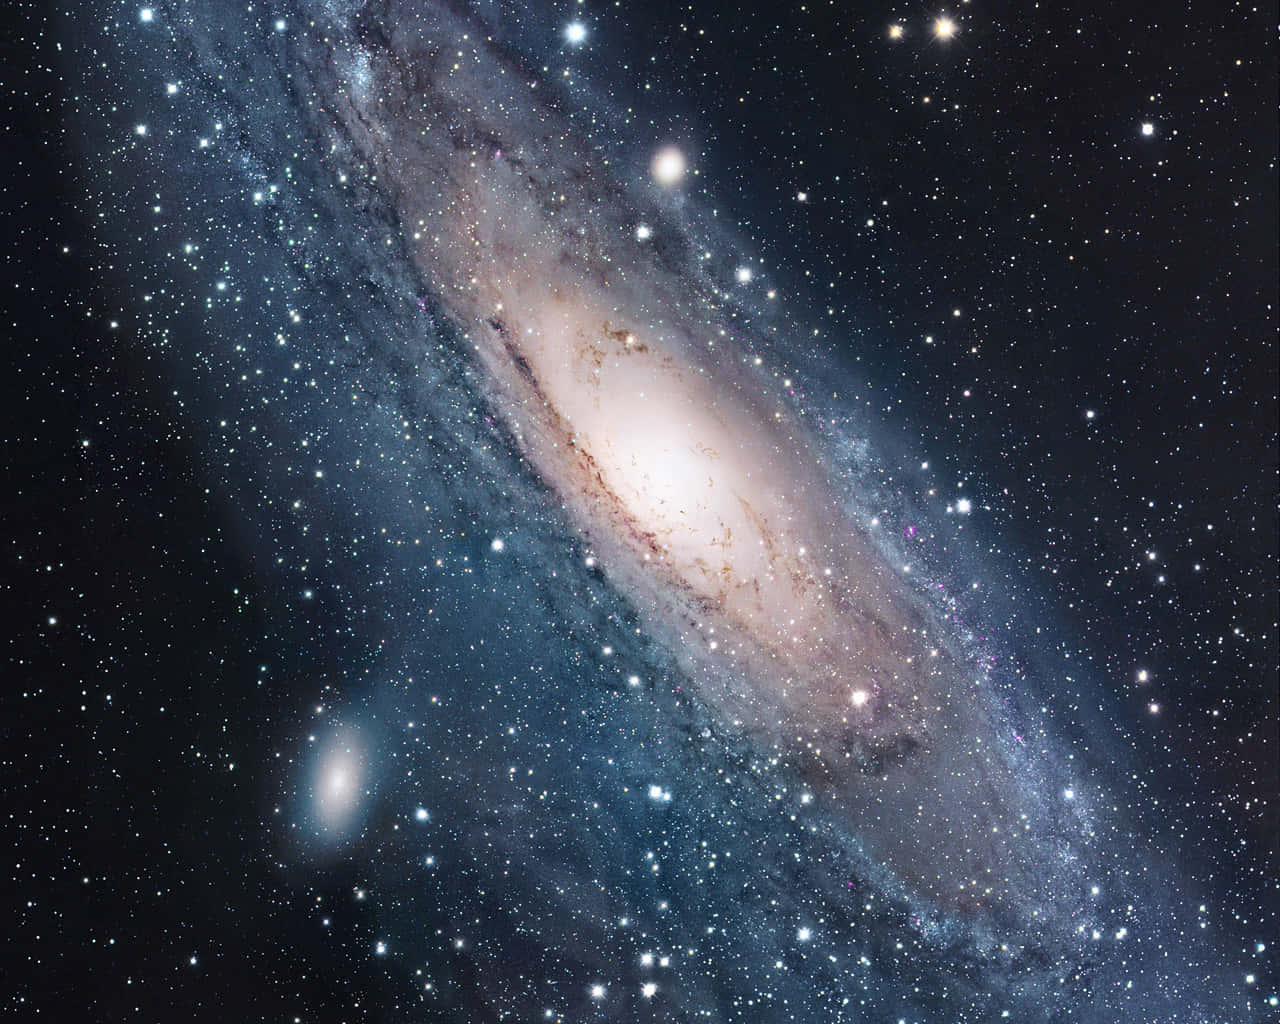 Impresionantevista Cósmica Con Galaxias Distantes, Estrellas Y Nebulosas Vibrantes.